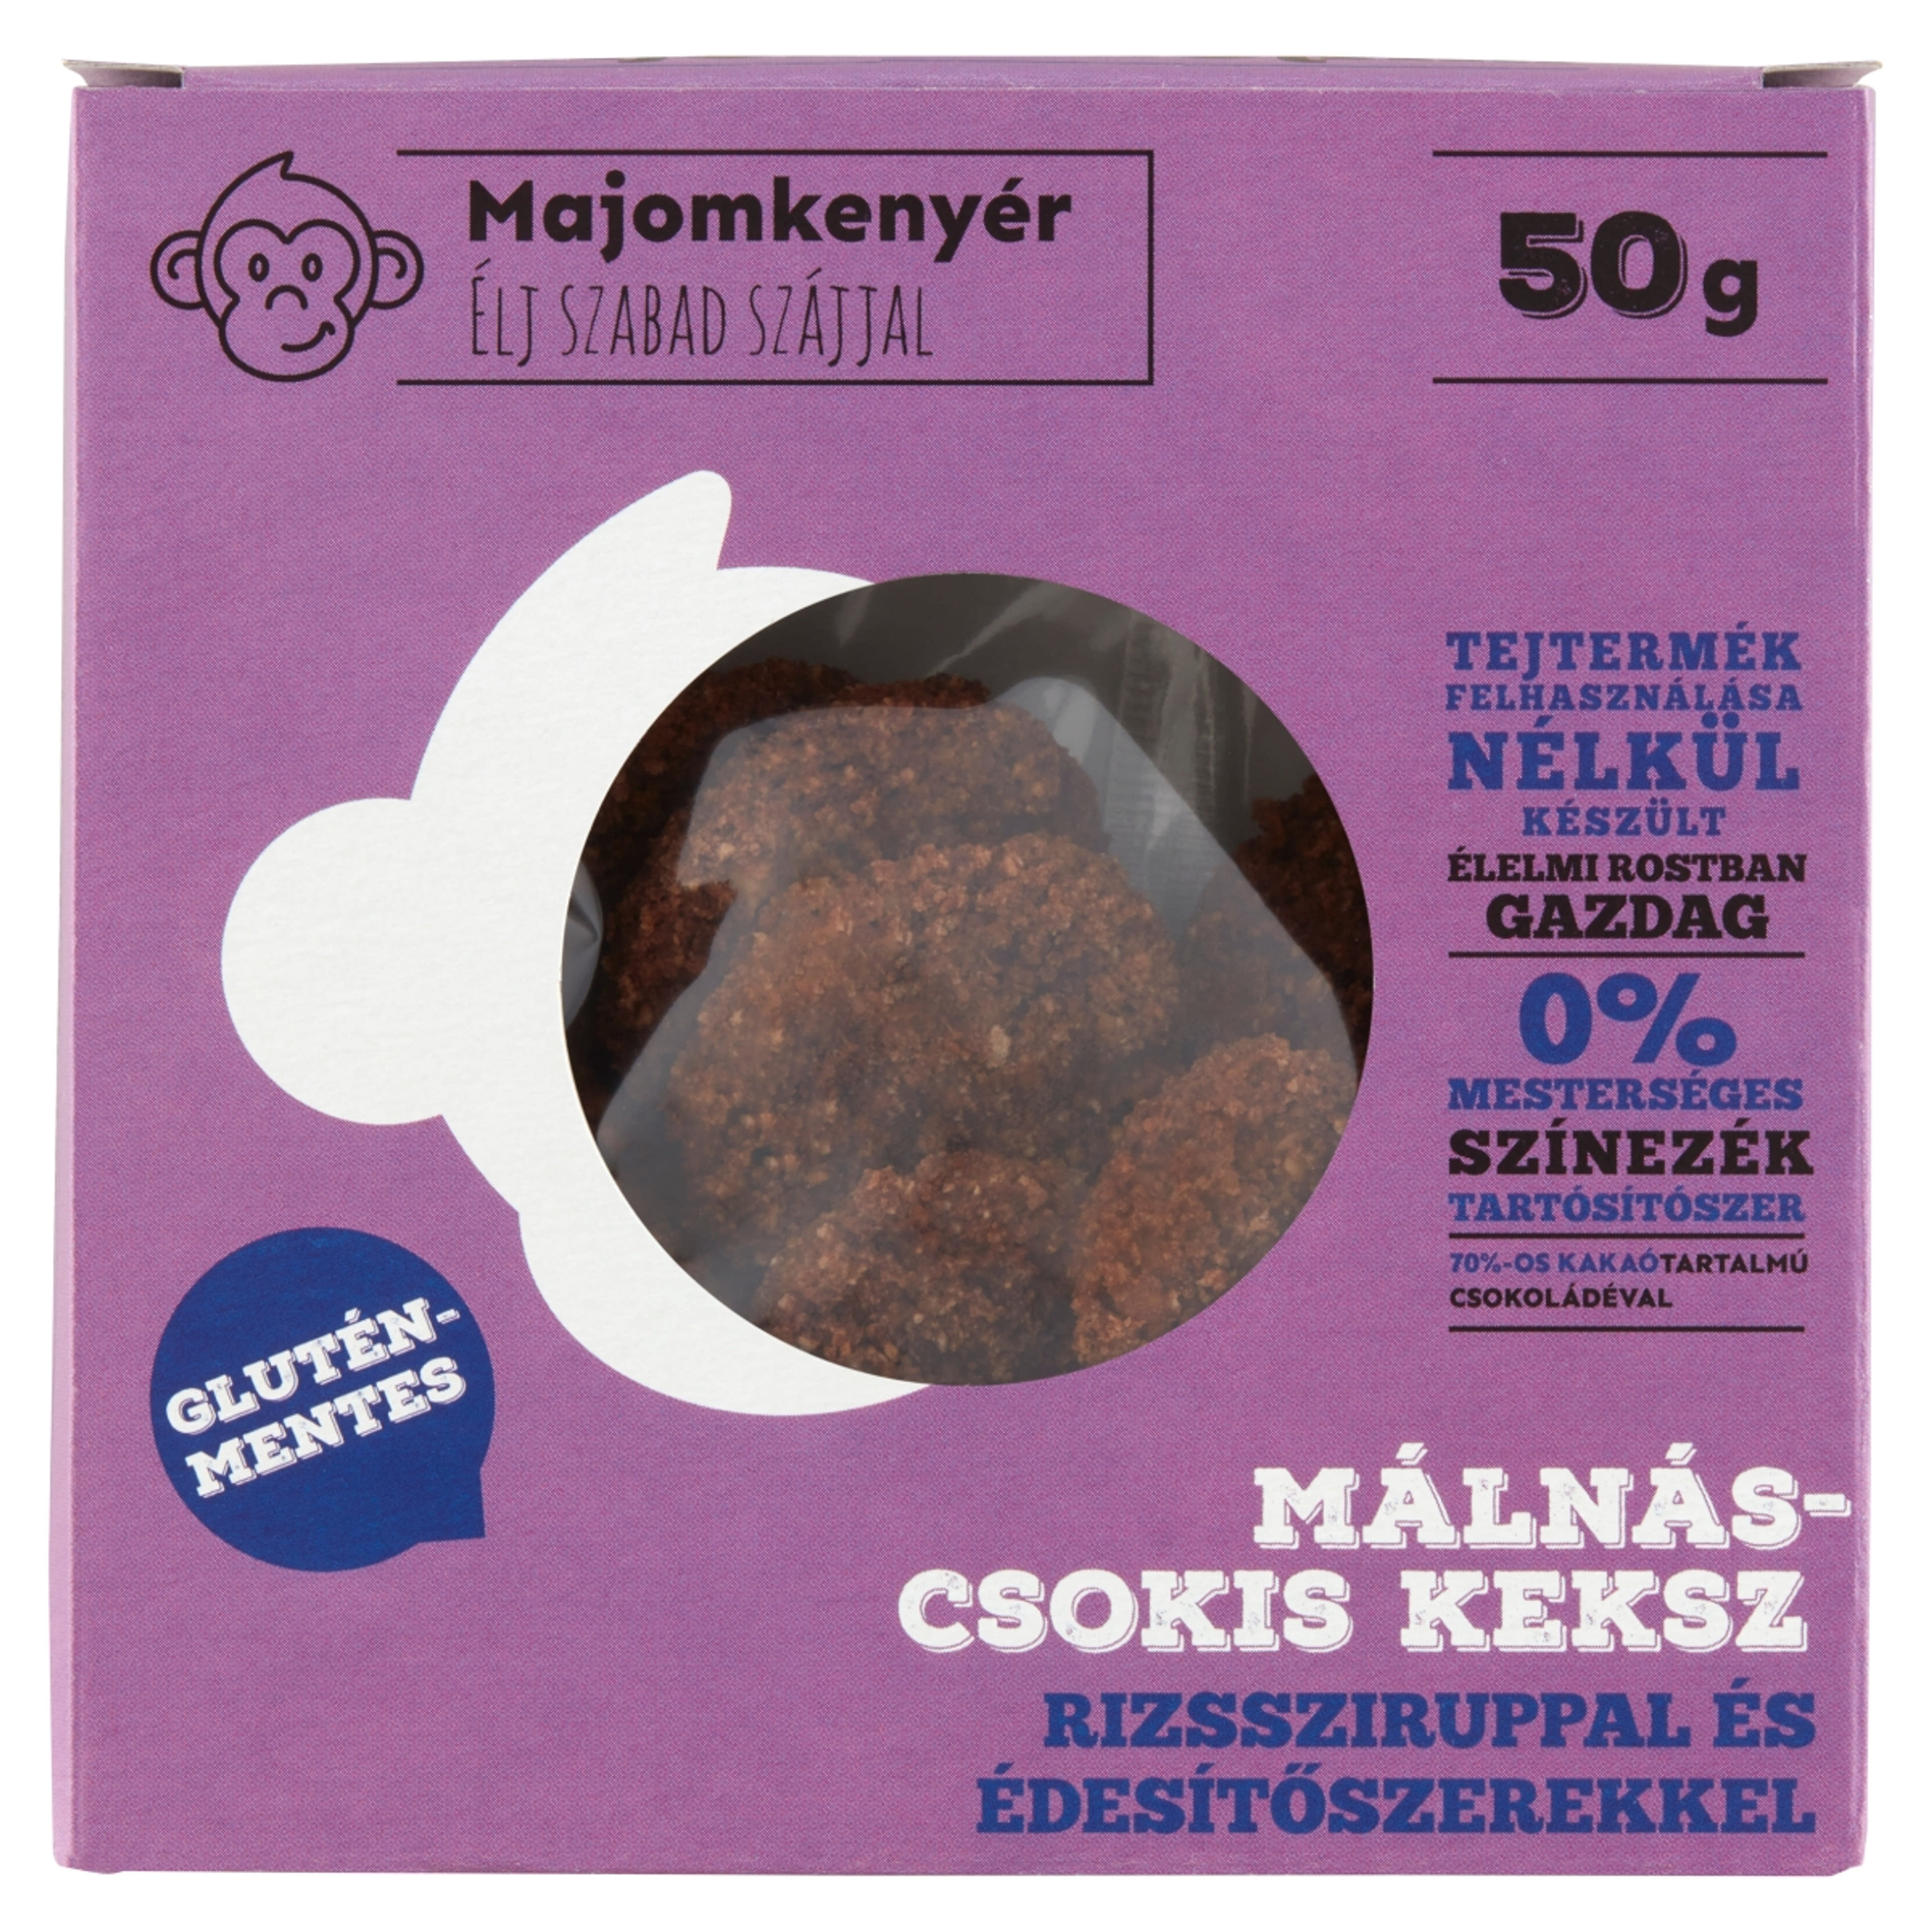 Majomkenyér Gluténmentes Málnás-Csokis keksz - 50 g